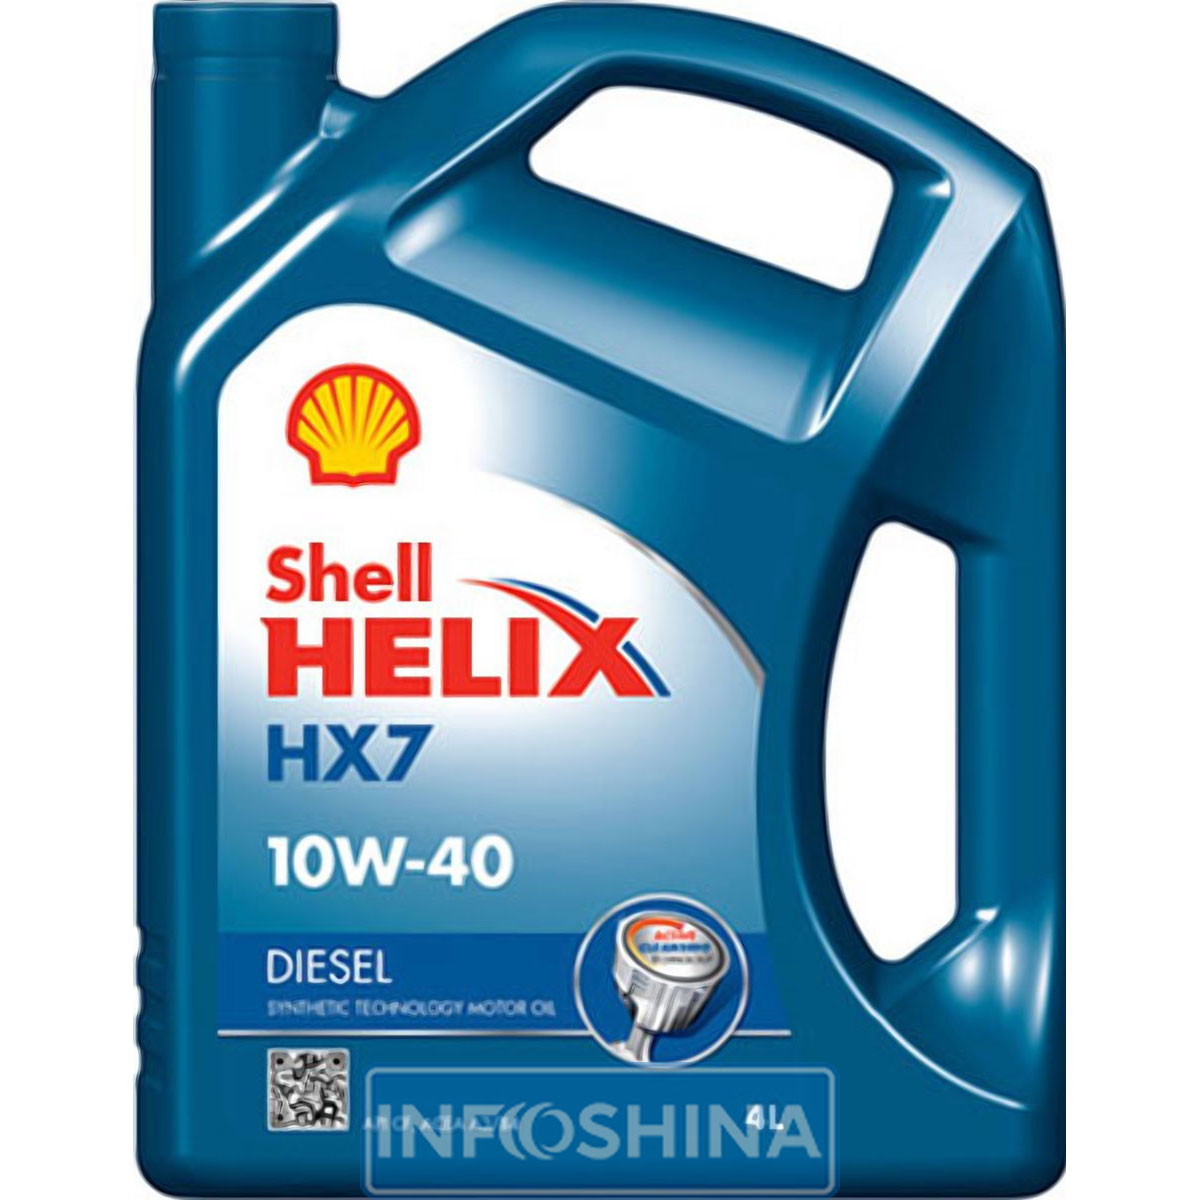 Shell Helix Diesel HX7 10W-40